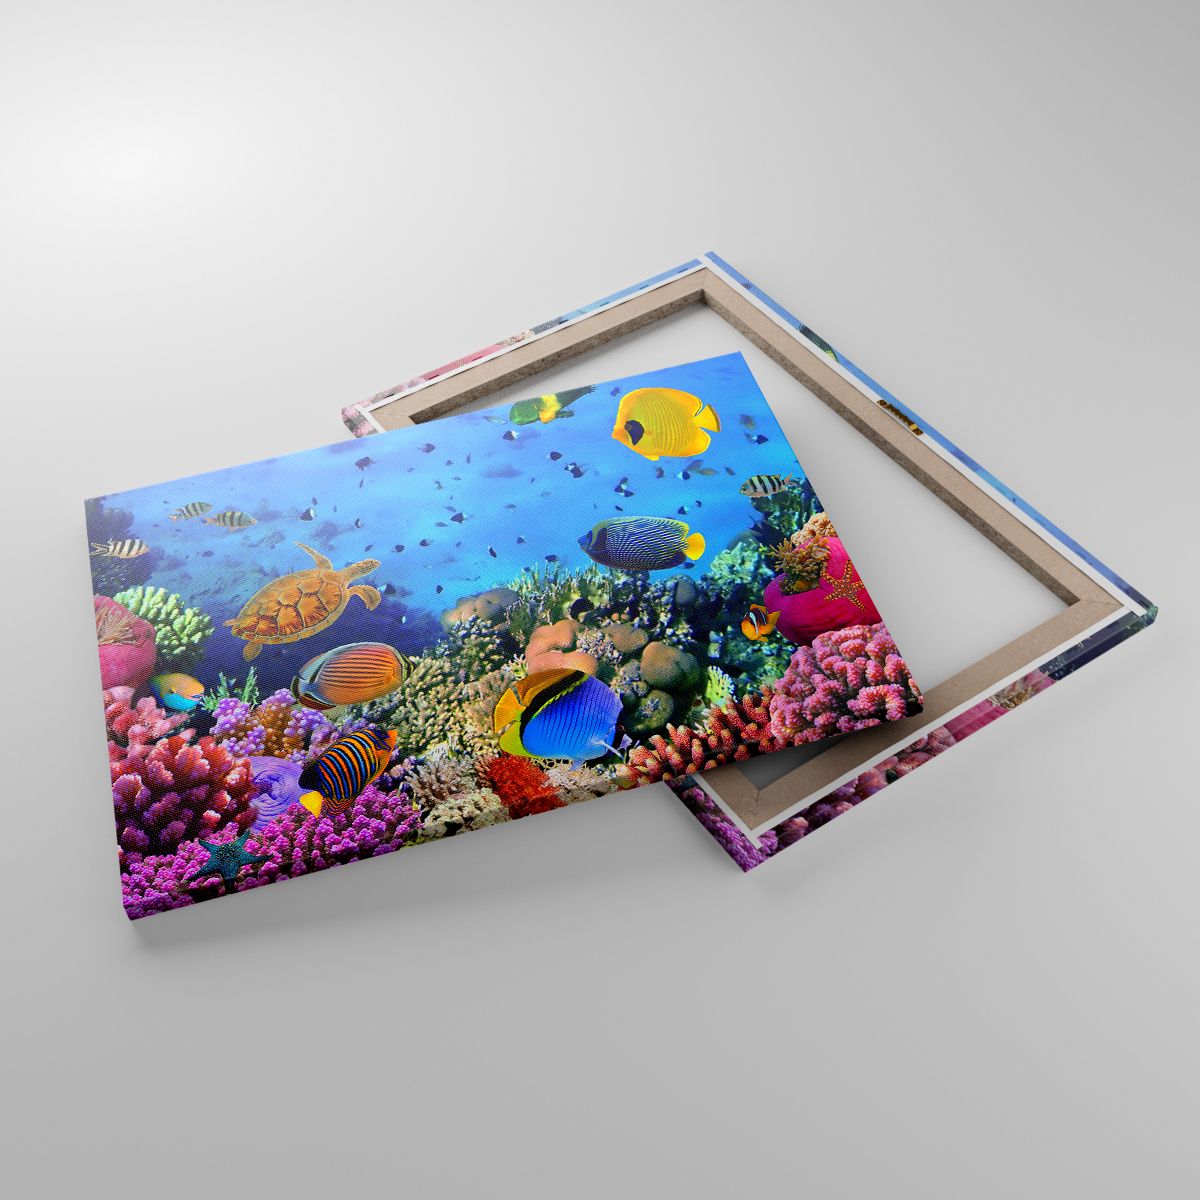 Leinwandbild Korallenriff, Leinwandbild Unterwasserwelt, Leinwandbild Fische, Leinwandbild Karibik, Leinwandbild Tauchen